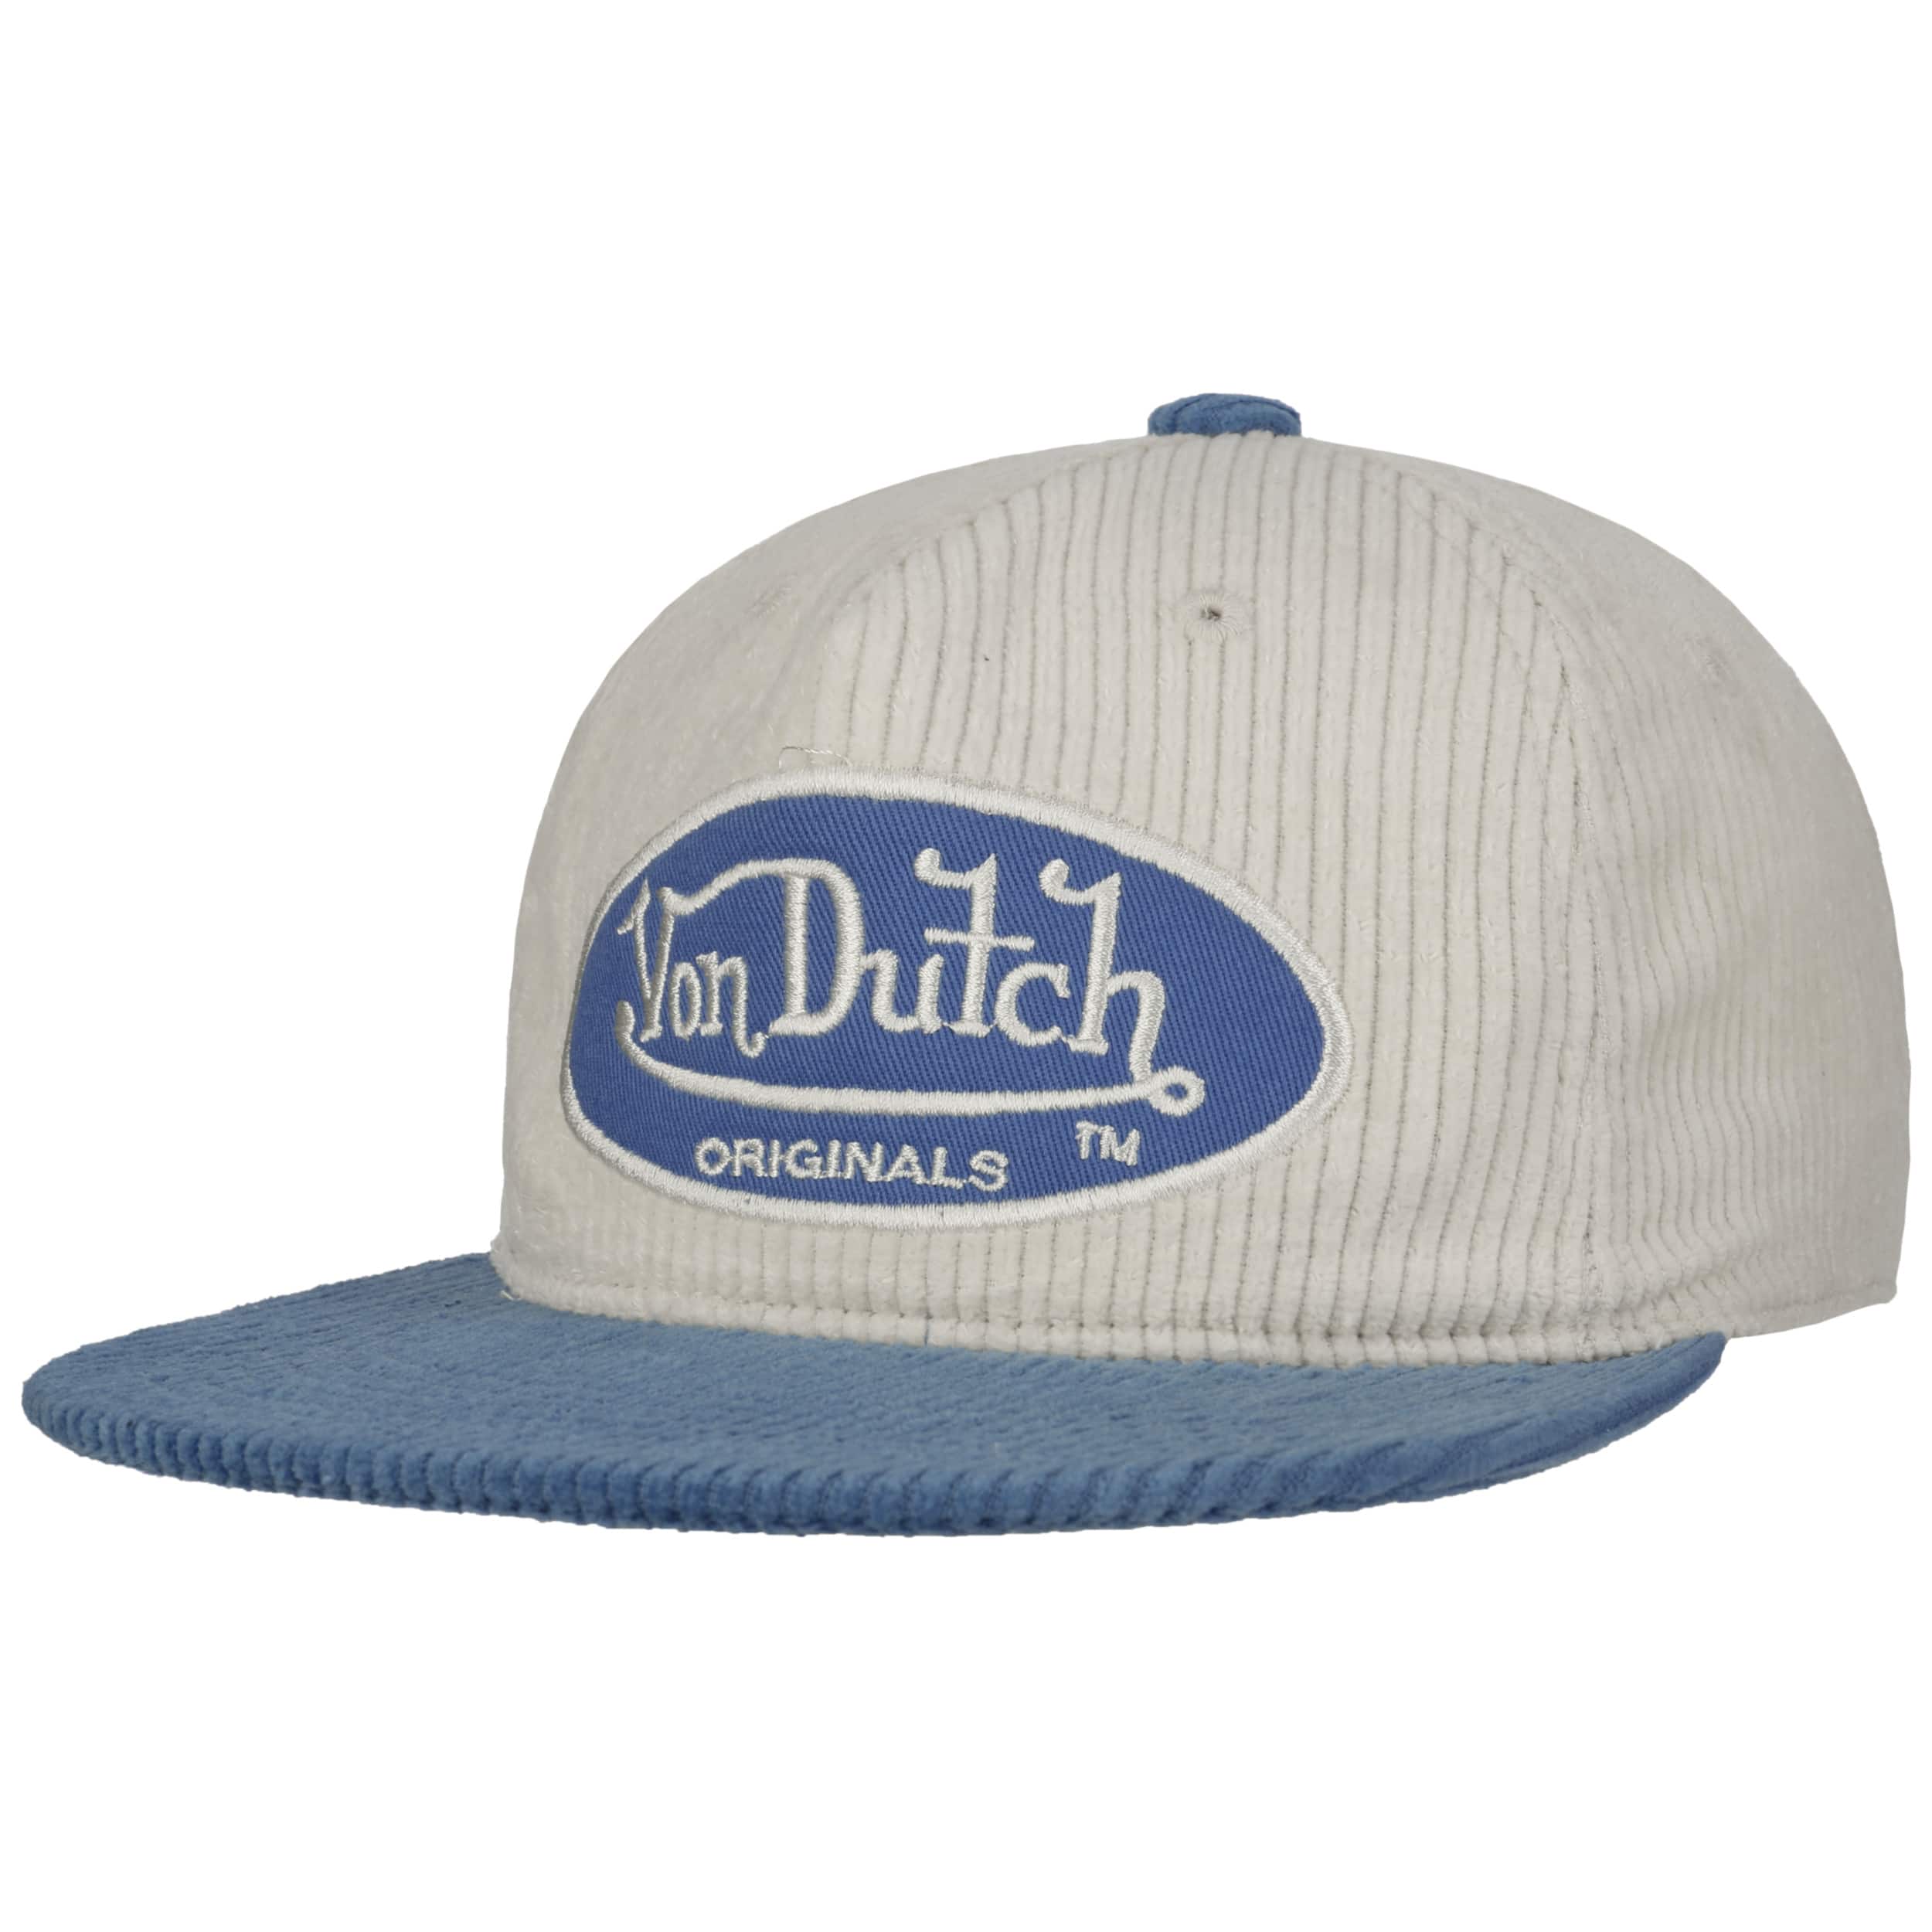 Utica Cord Oval Patch Cap by Von Dutch